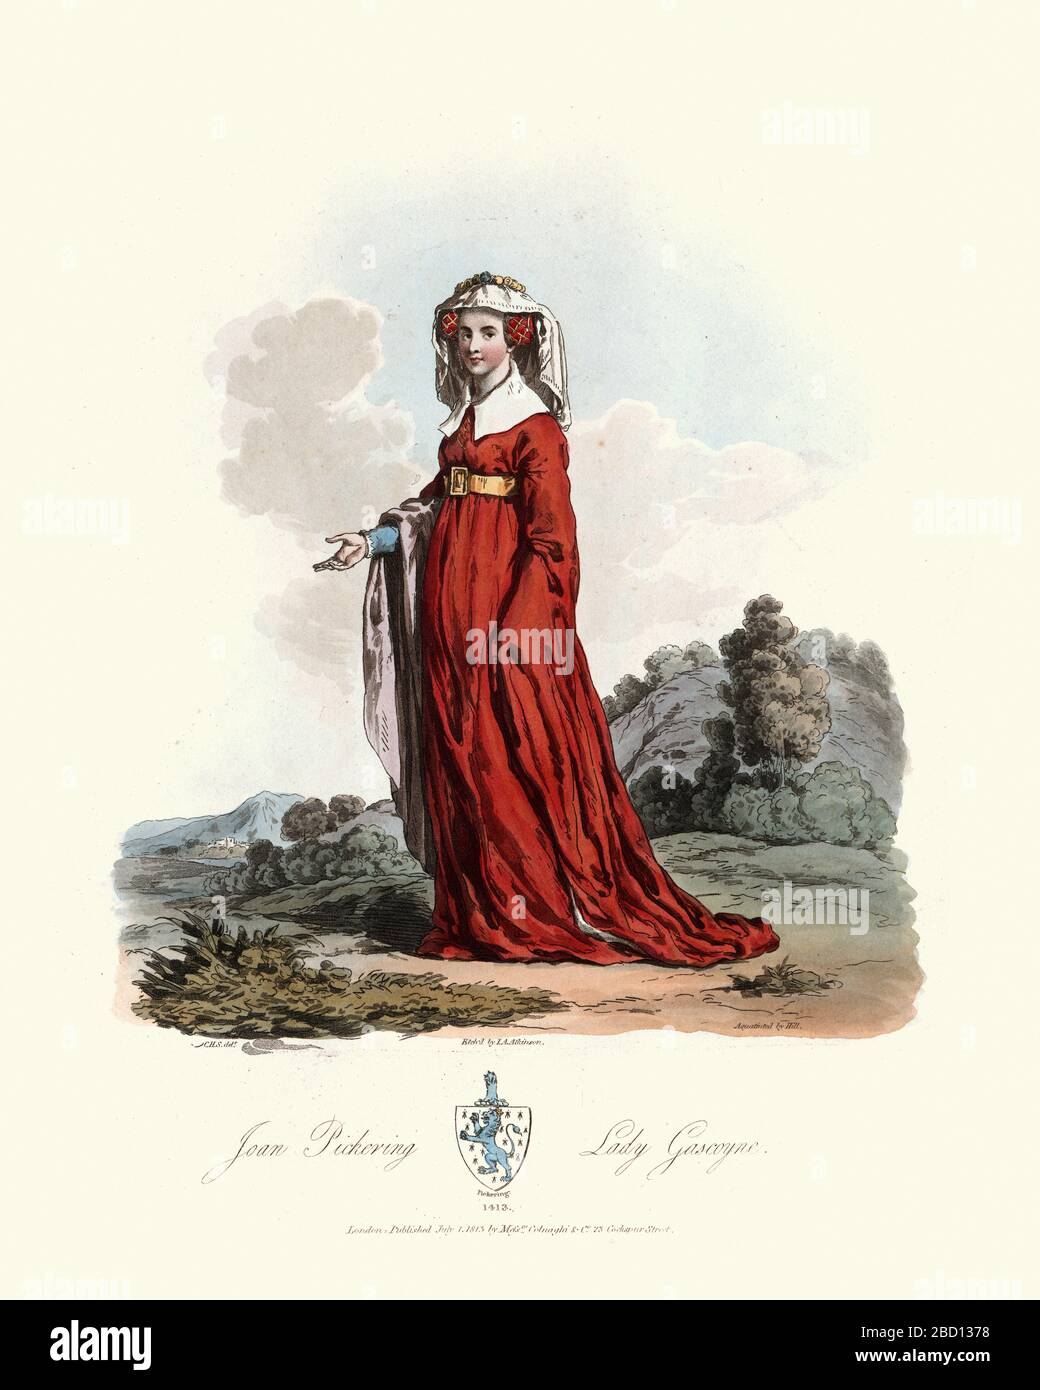 Mode médiéval, jeune femme médiévale portant une longue robe rouge. Joan de Pickering, Lady Gascoigne, 15ème siècle. Épouse de Sir William Gascoigne. Banque D'Images